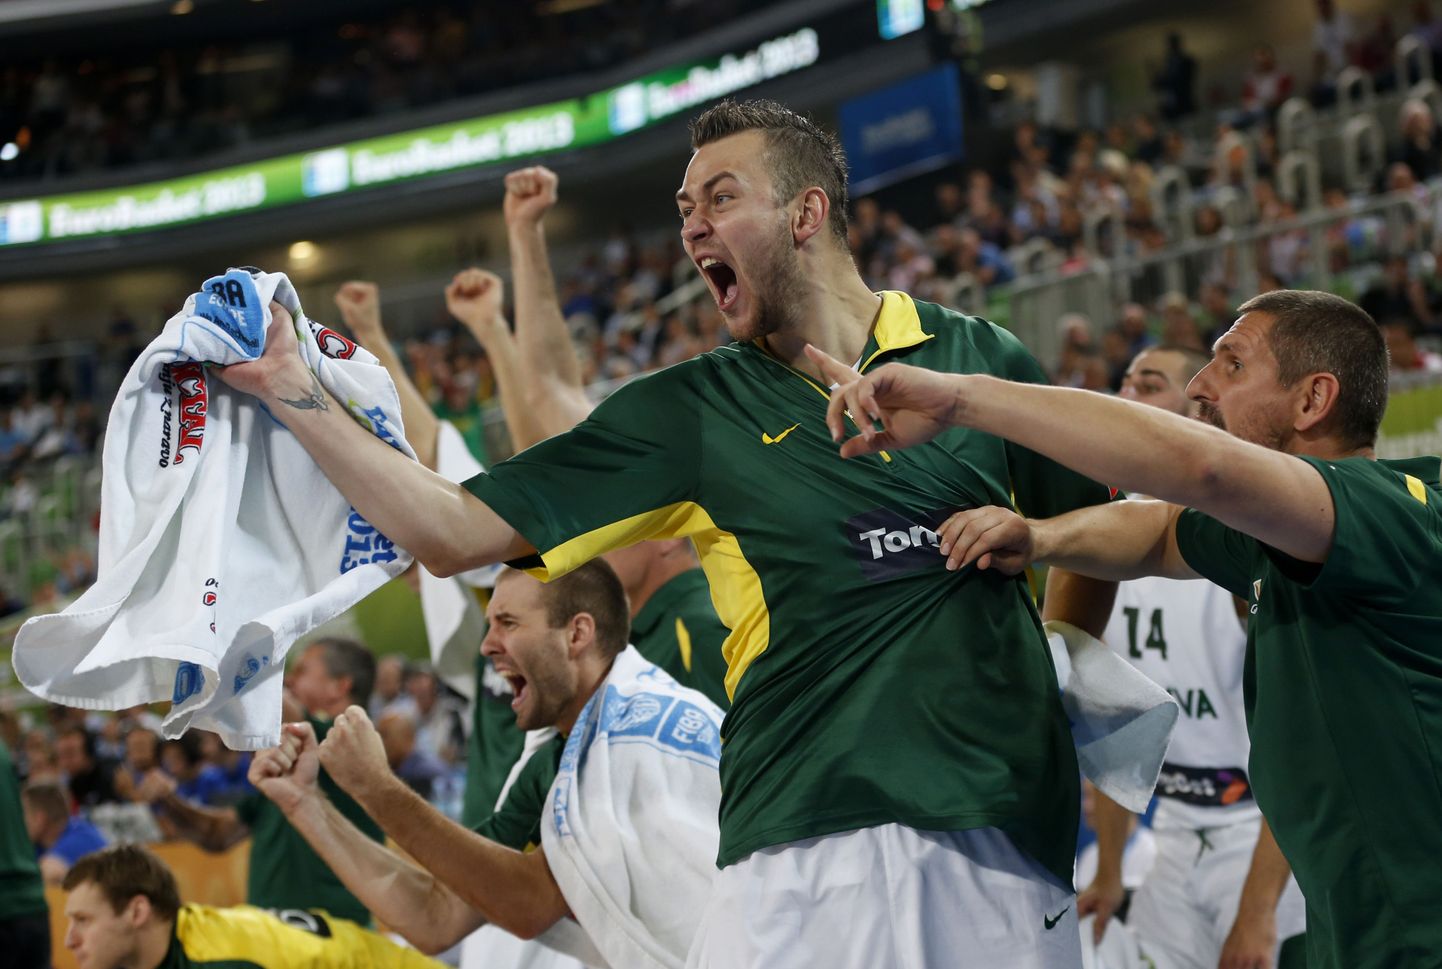 Leedu korvpallikoondis jõudis EM-finaali.